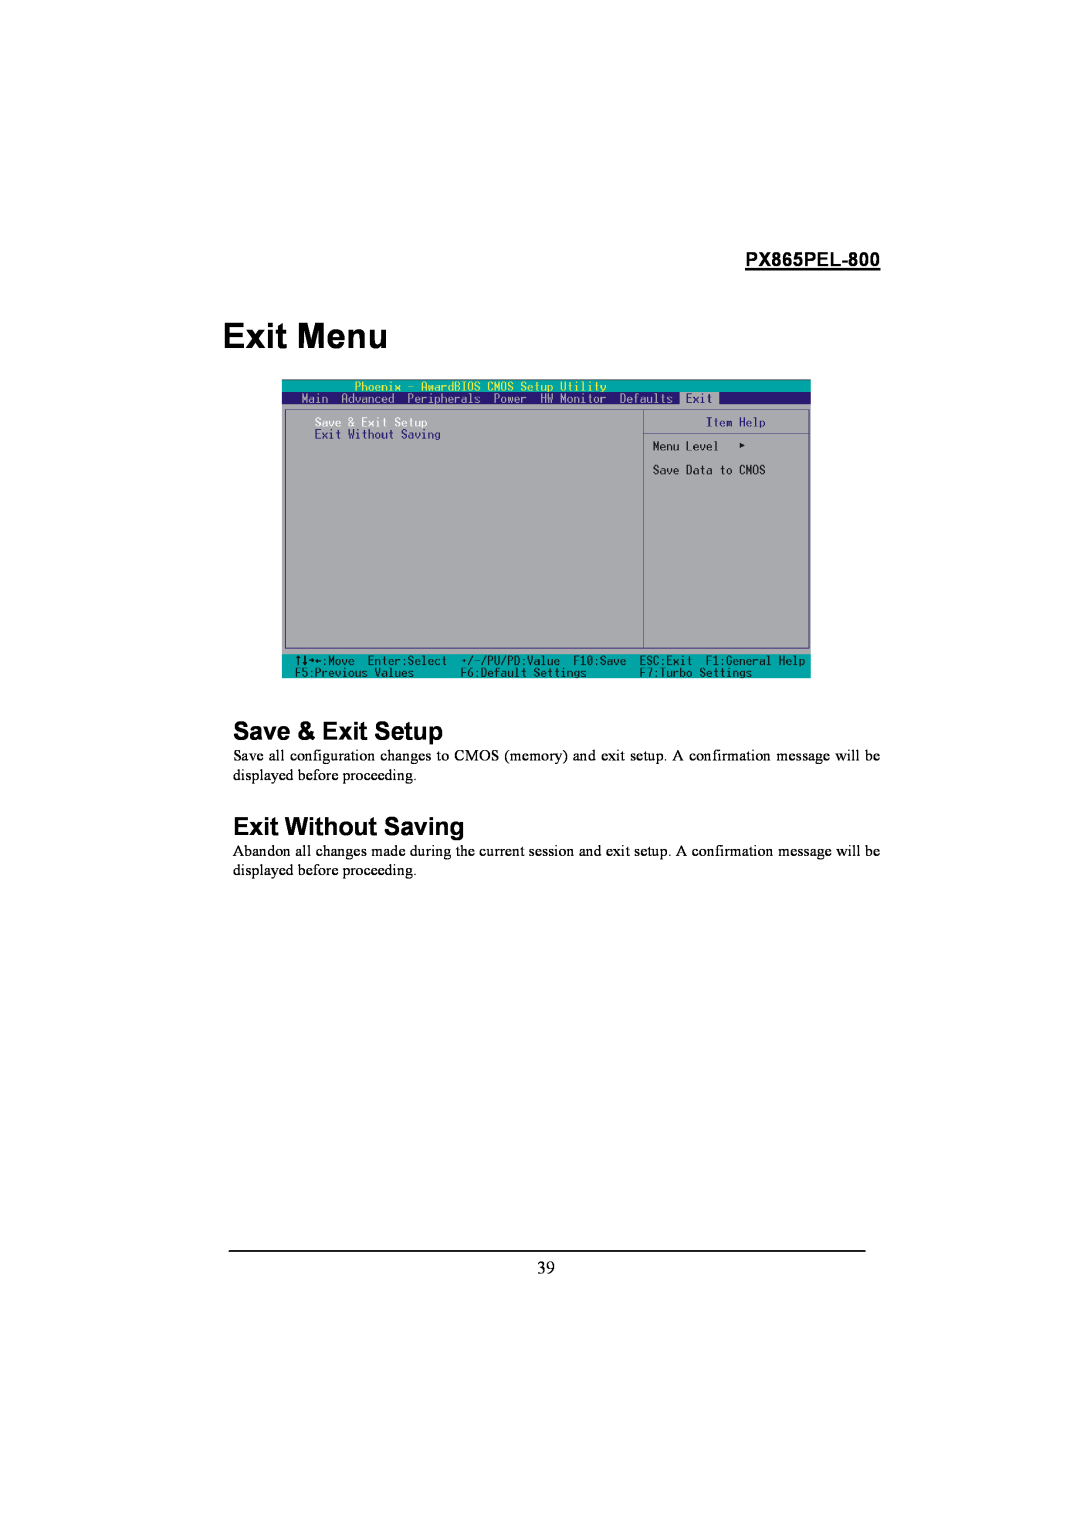 Intel PX865PEL-800 warranty Exit Menu, Save & Exit Setup, Exit Without Saving 